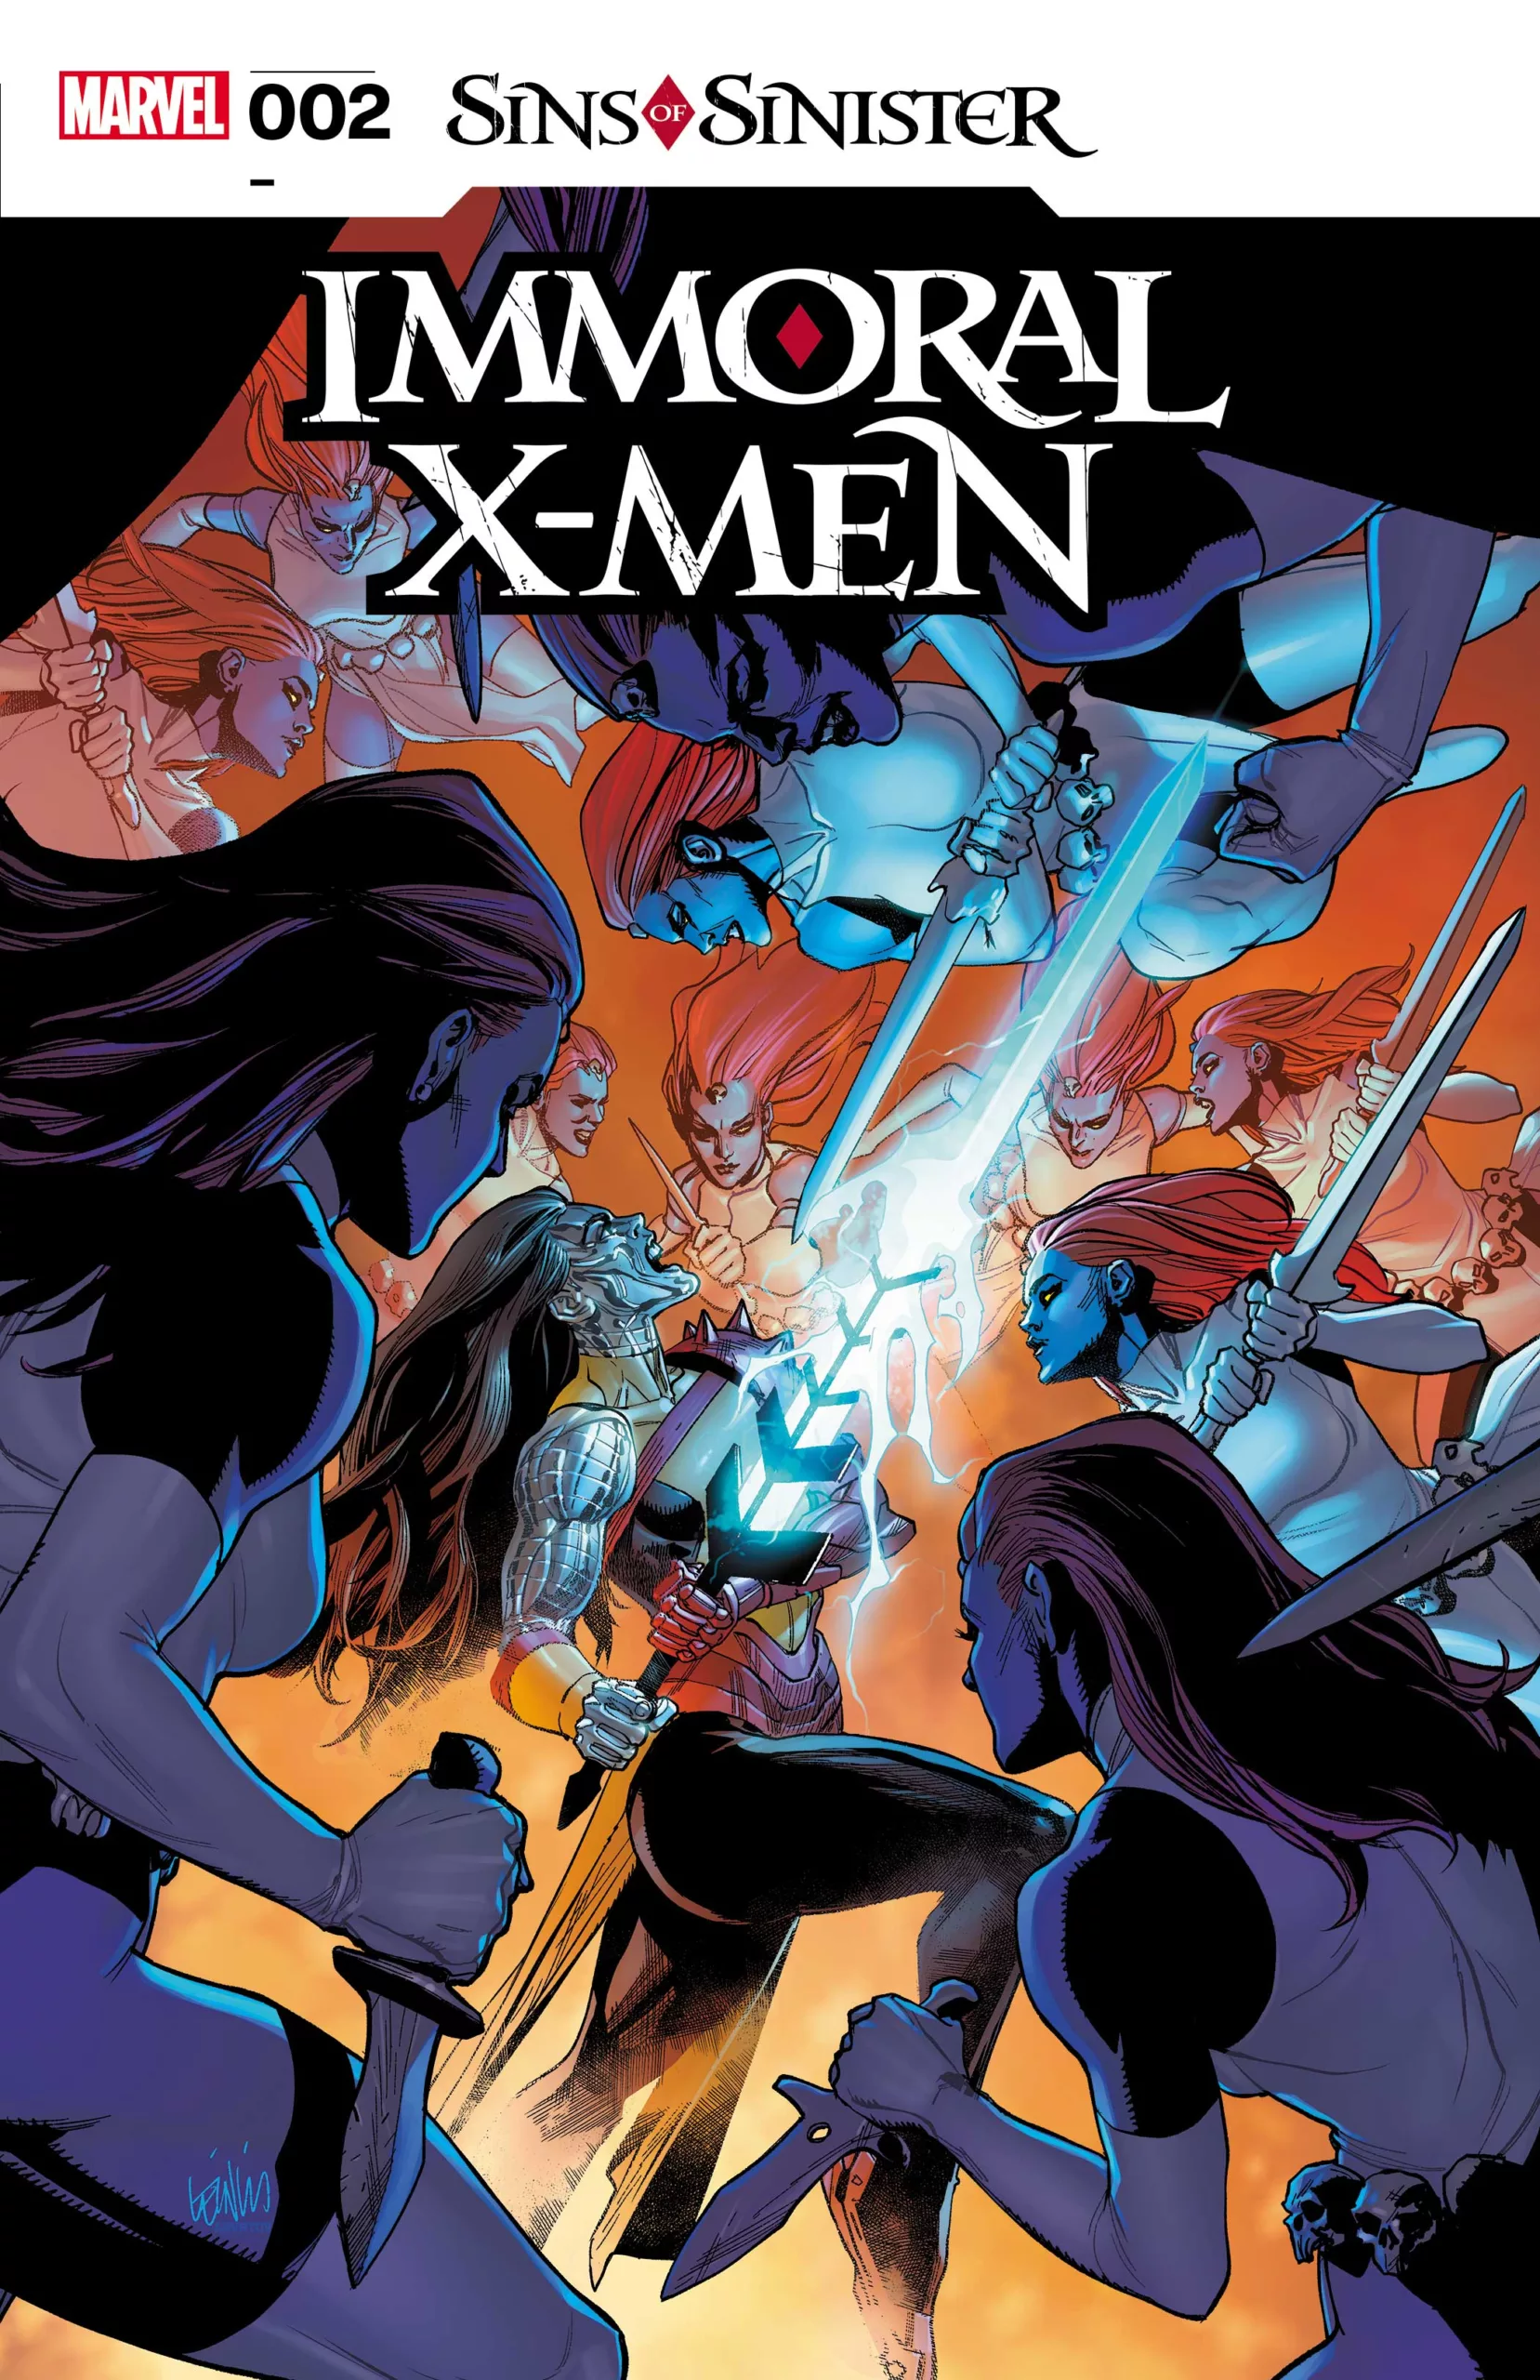 Immoral X-Men#2